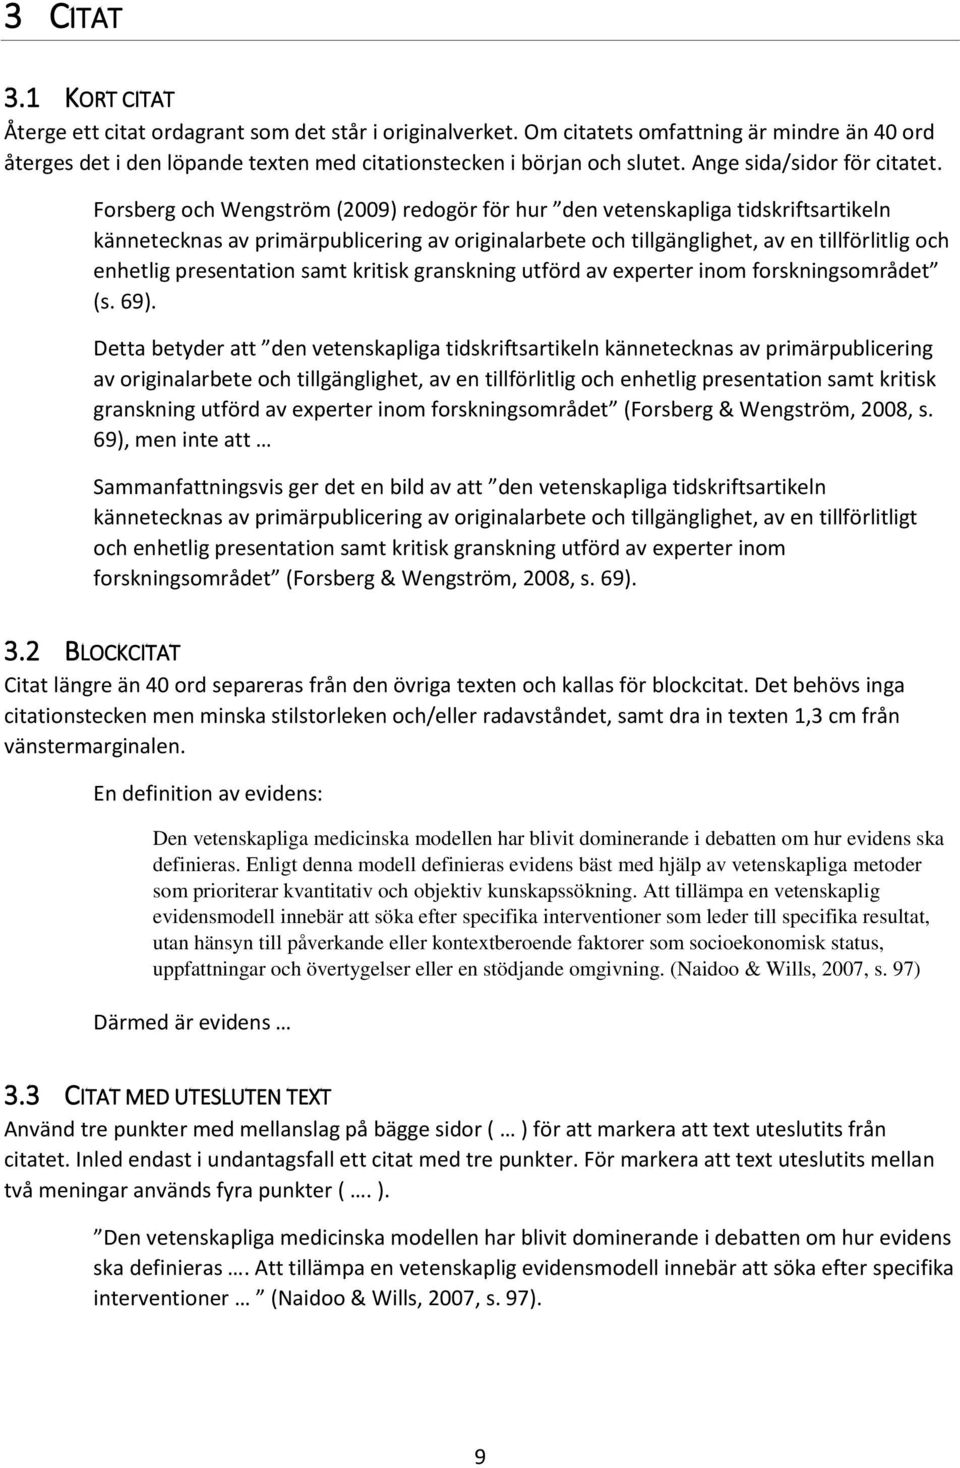 Forsberg och Wengström (2009) redogör för hur den vetenskapliga tidskriftsartikeln kännetecknas av primärpublicering av originalarbete och tillgänglighet, av en tillförlitlig och enhetlig